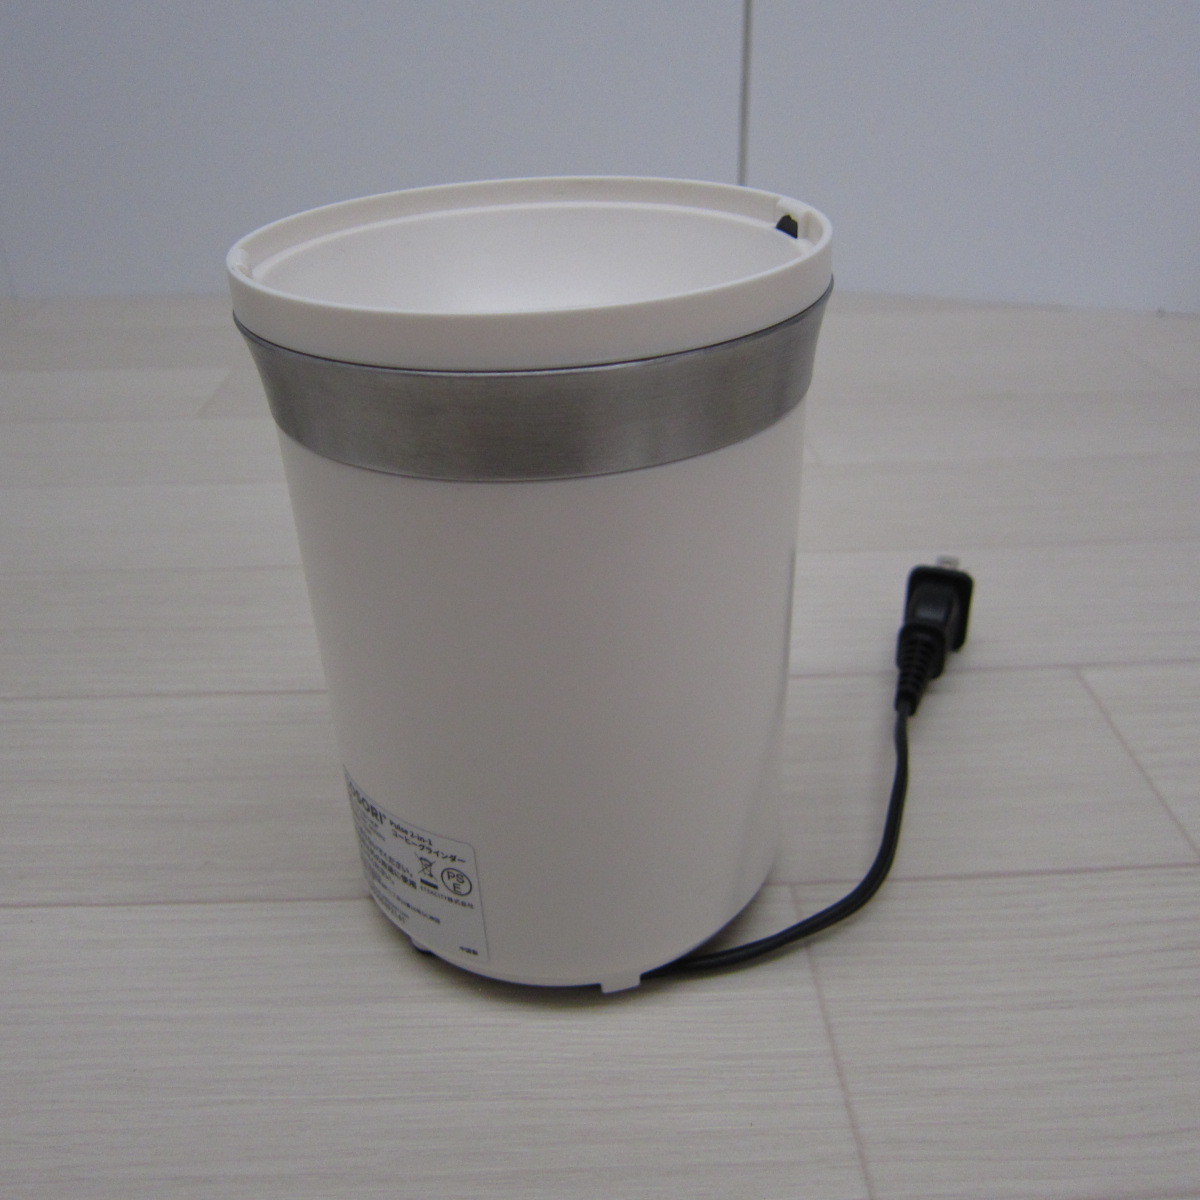 PB4430【美品】コーヒーミル 電動 COSORI 電動コーヒーグライン ダー 取り外し水洗い可能 70g大容量 PSE認証済み CCG-U02